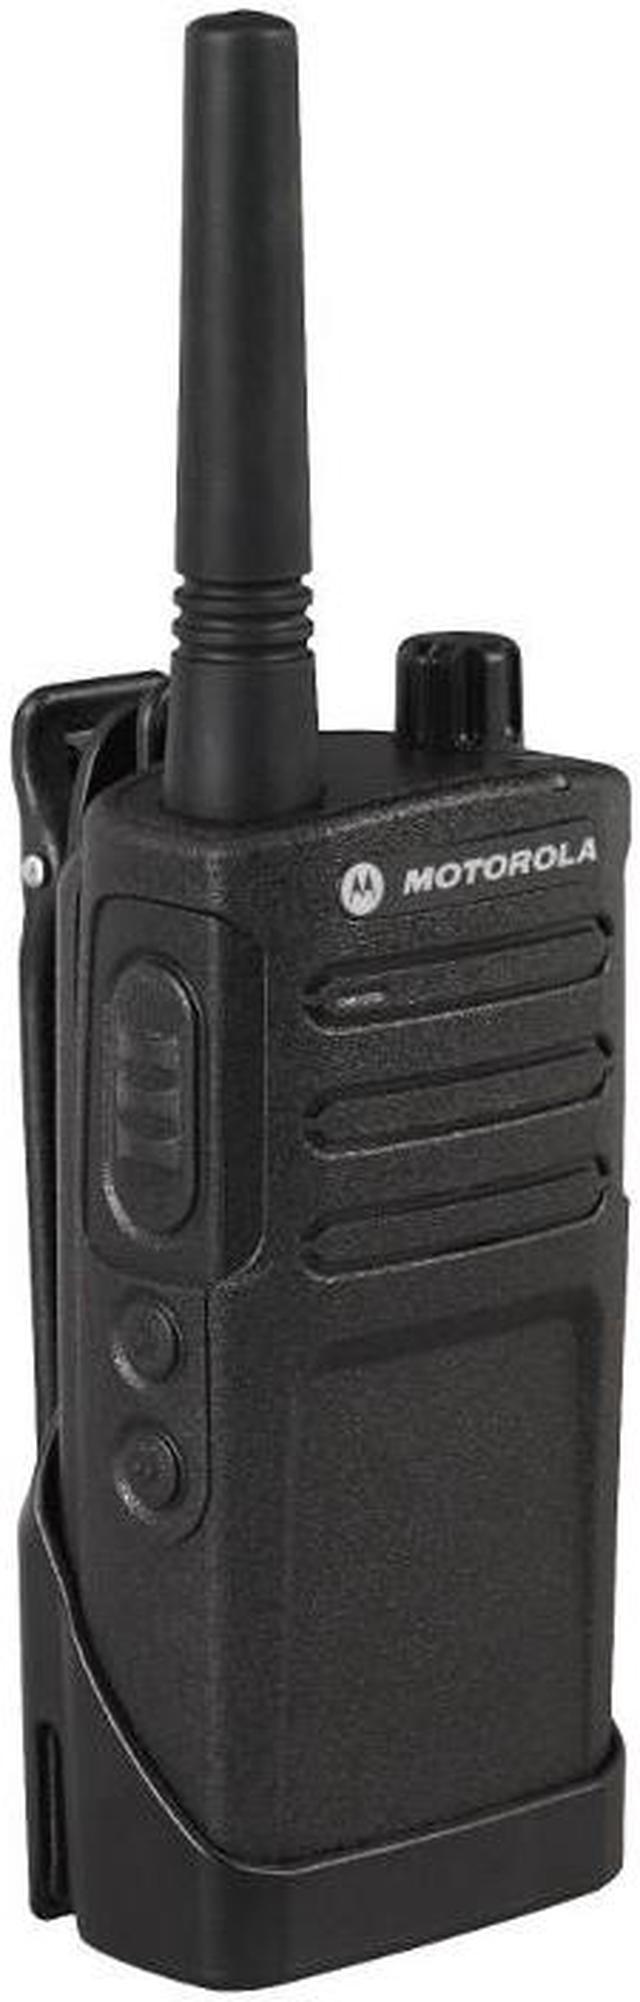 Motorola RMM2050 Professional Two Way Radio w/ 20 Floor Indoor  250,000  sq. ft. Warehouse Range